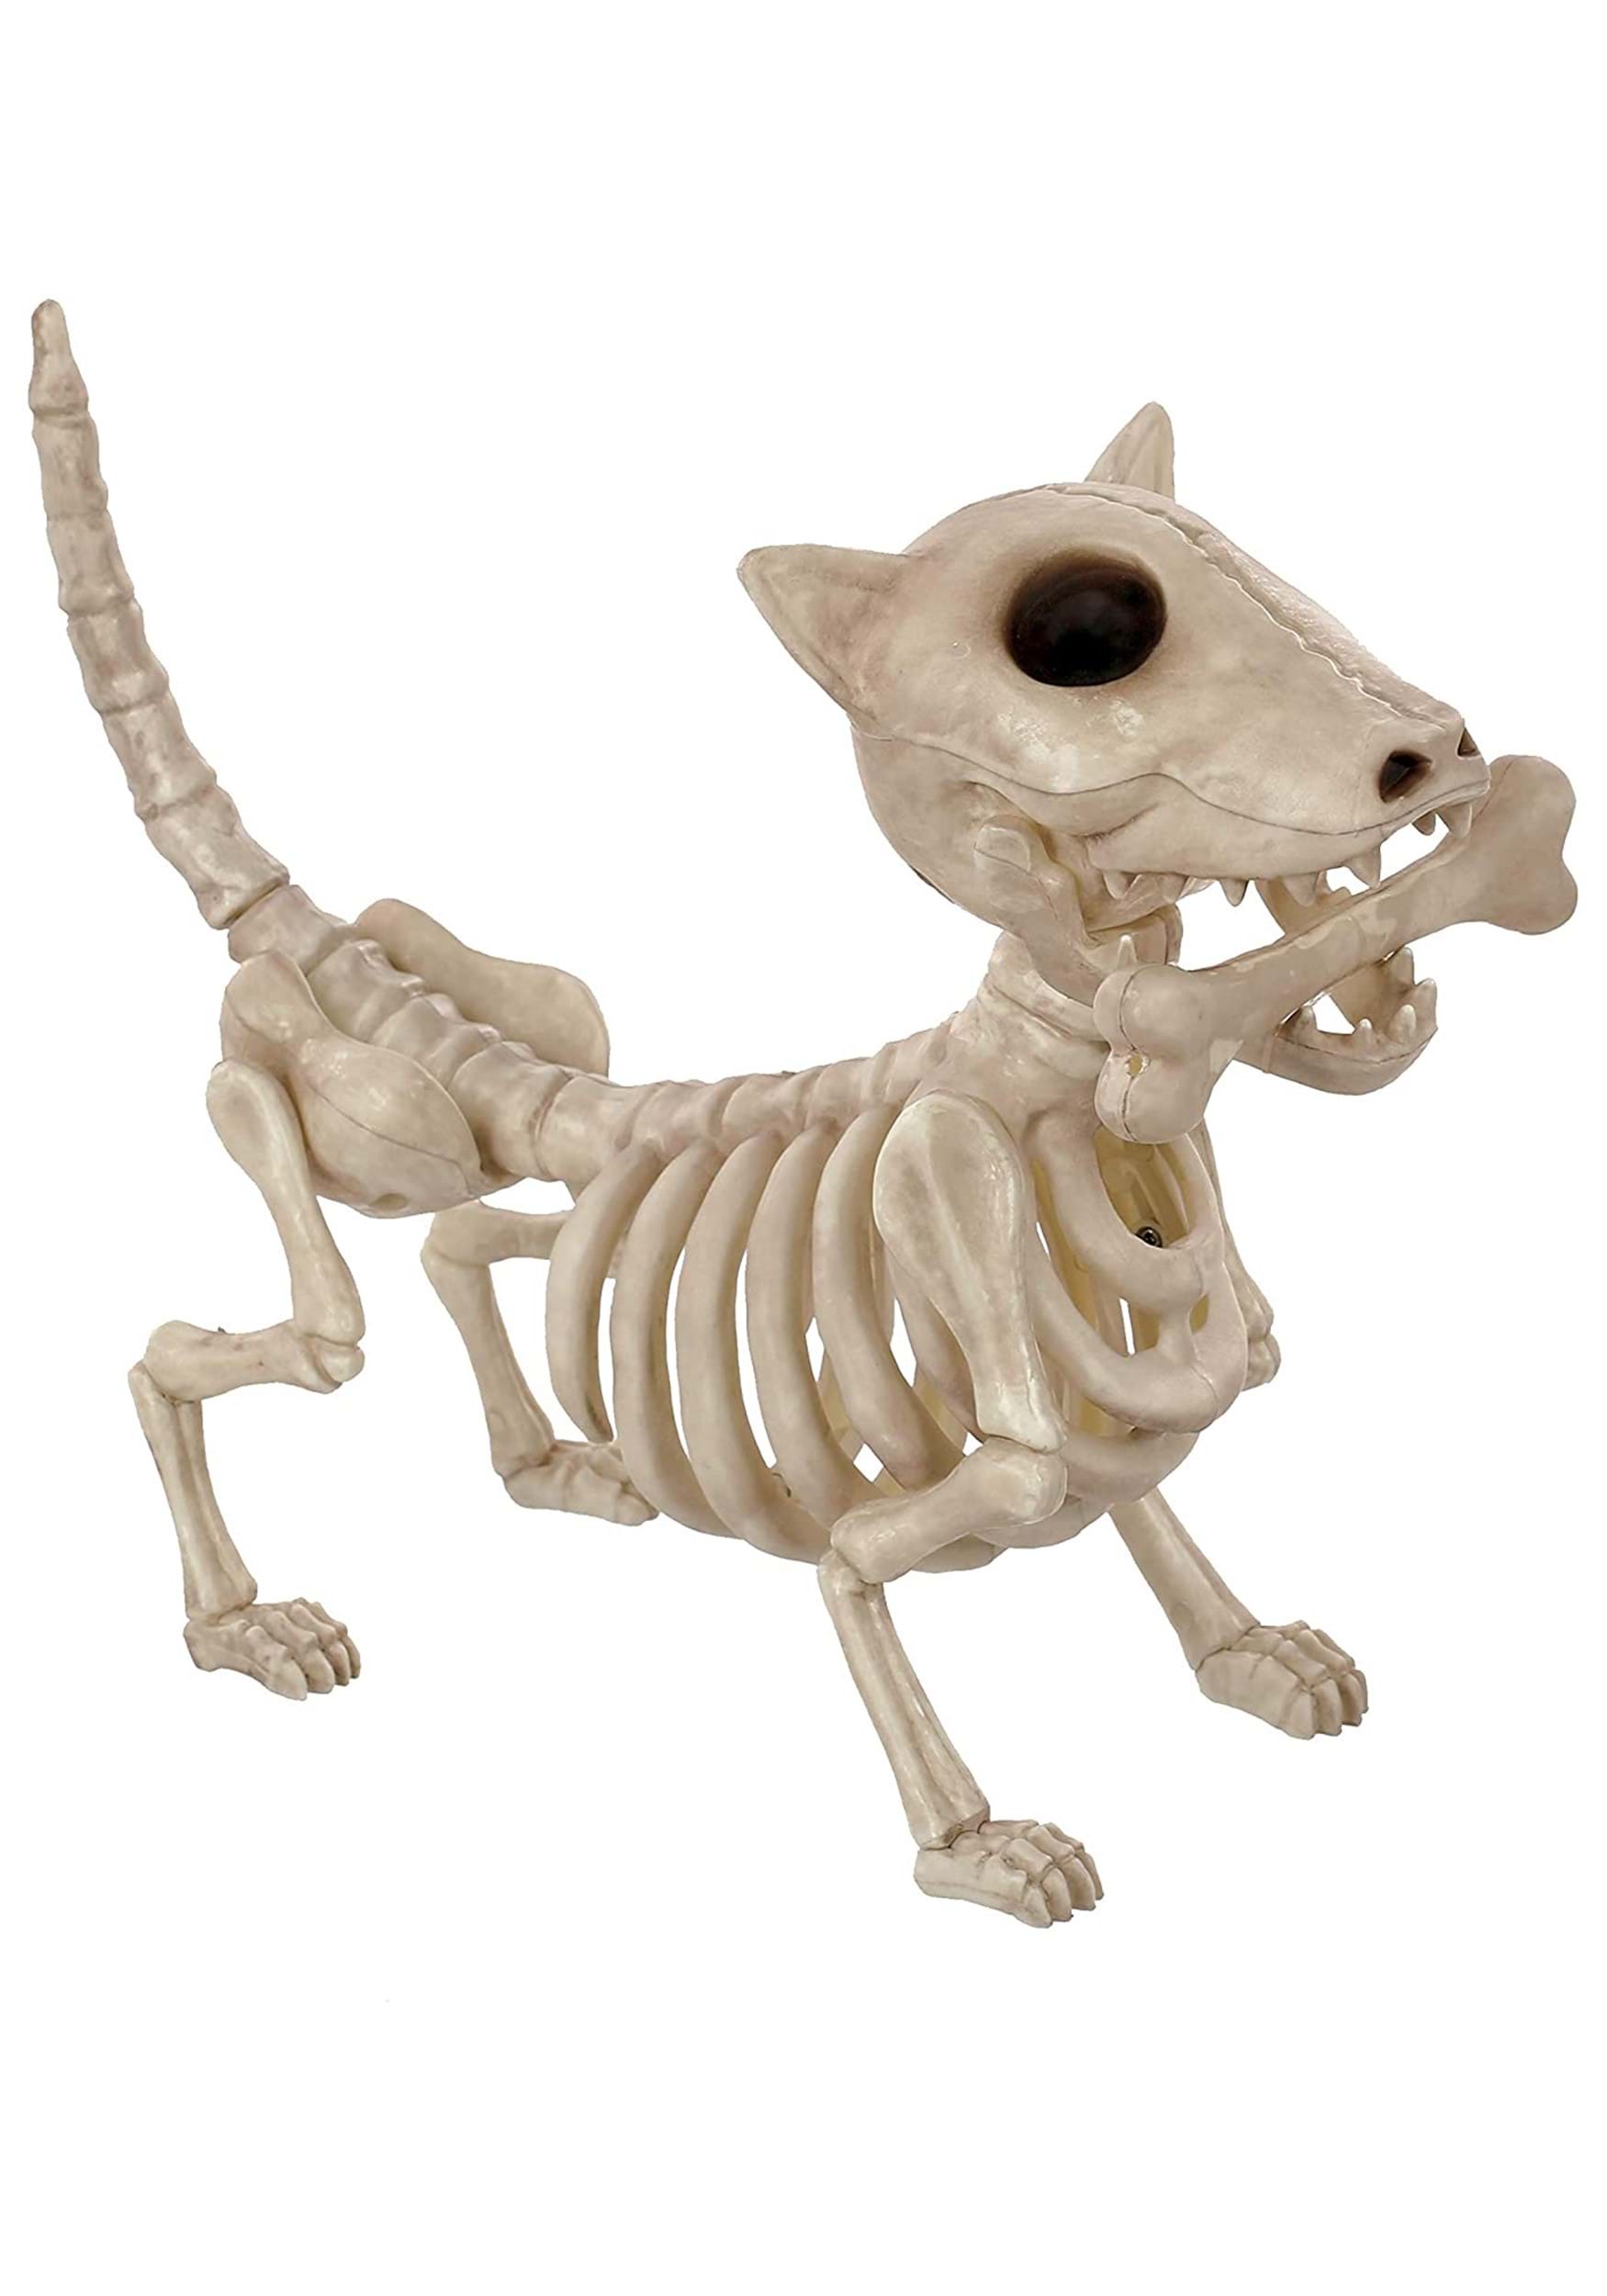 10.5" Digger the Skeleton Dog